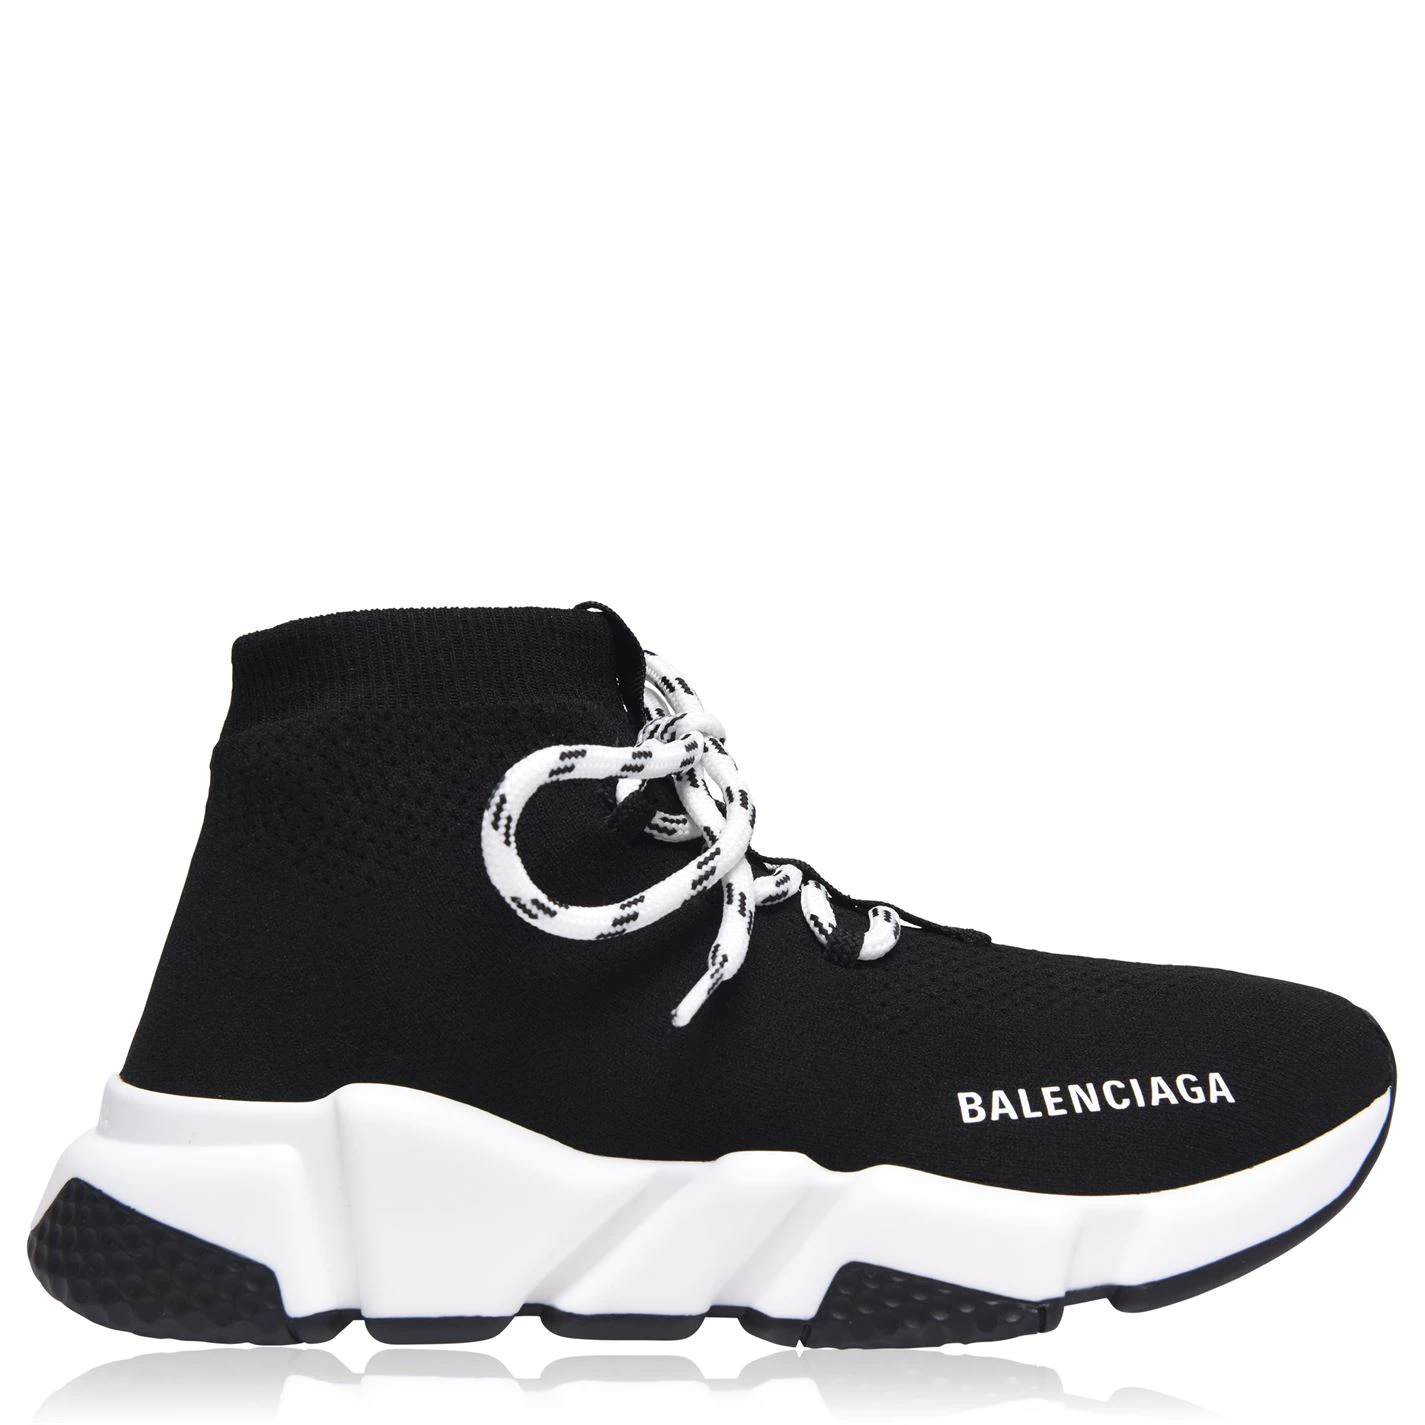 Balenciaga Women's Speed Laces Black/White